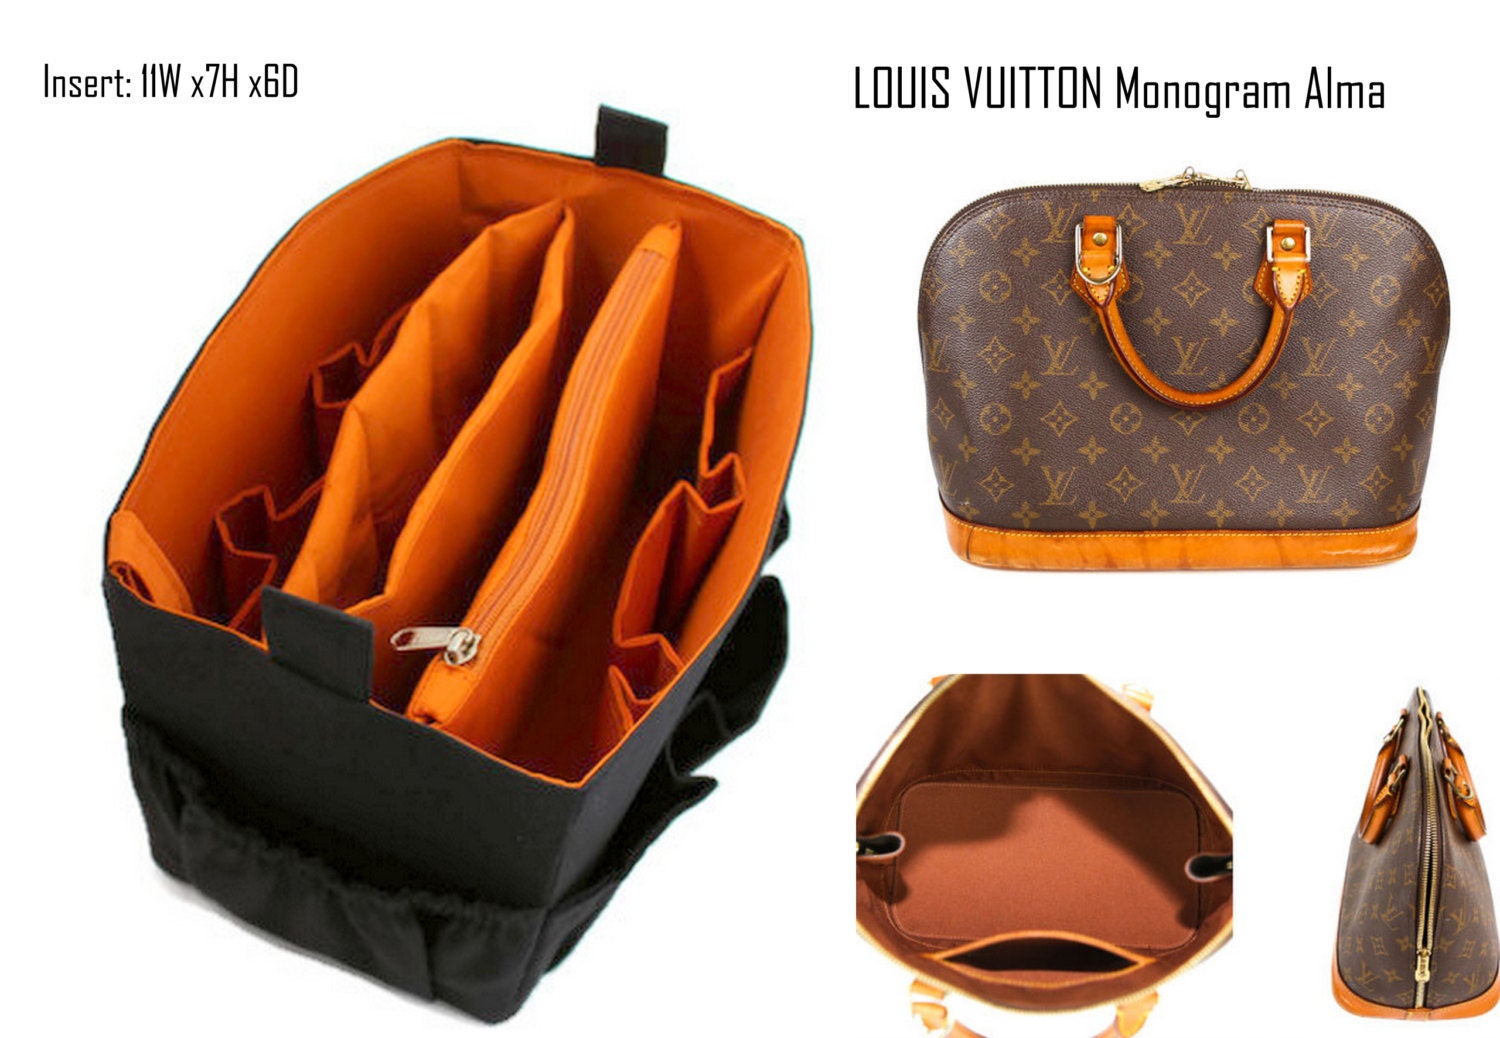 Buy Bag Organizer for Louis Vuitton Monogram Alma Handbag Purse